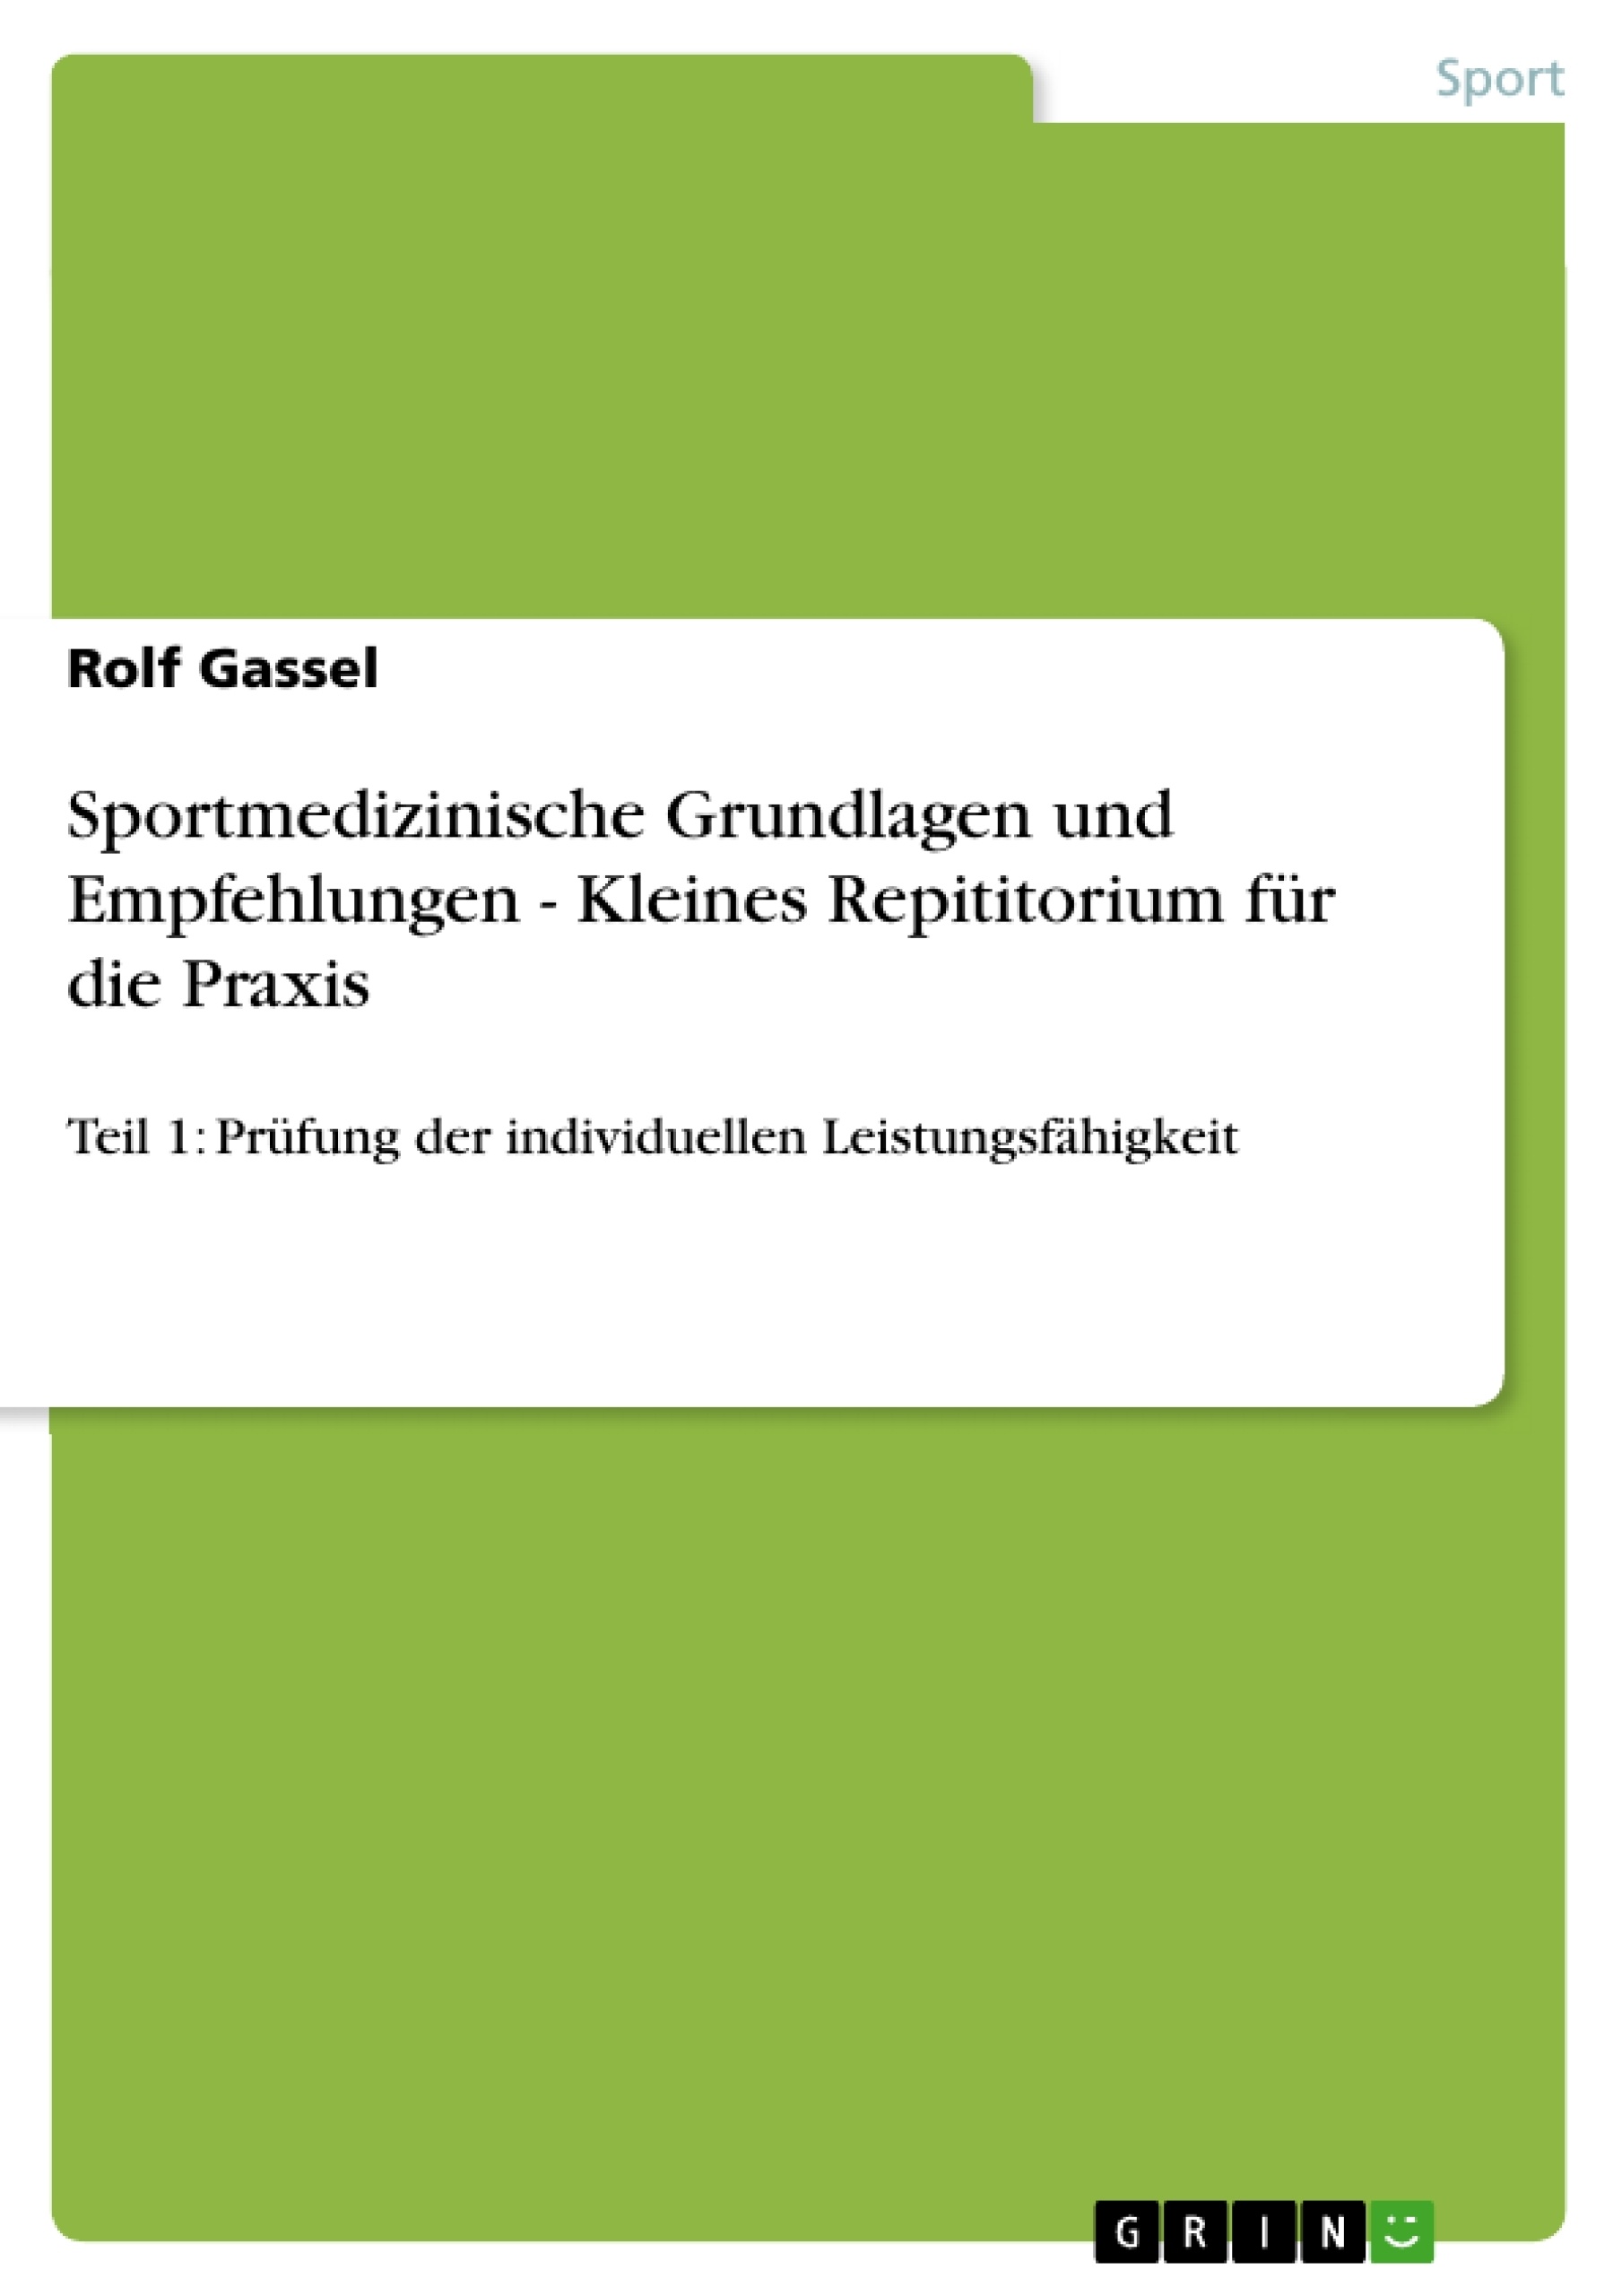 Titre: Sportmedizinische Grundlagen und Empfehlungen - Kleines Repititorium für die Praxis